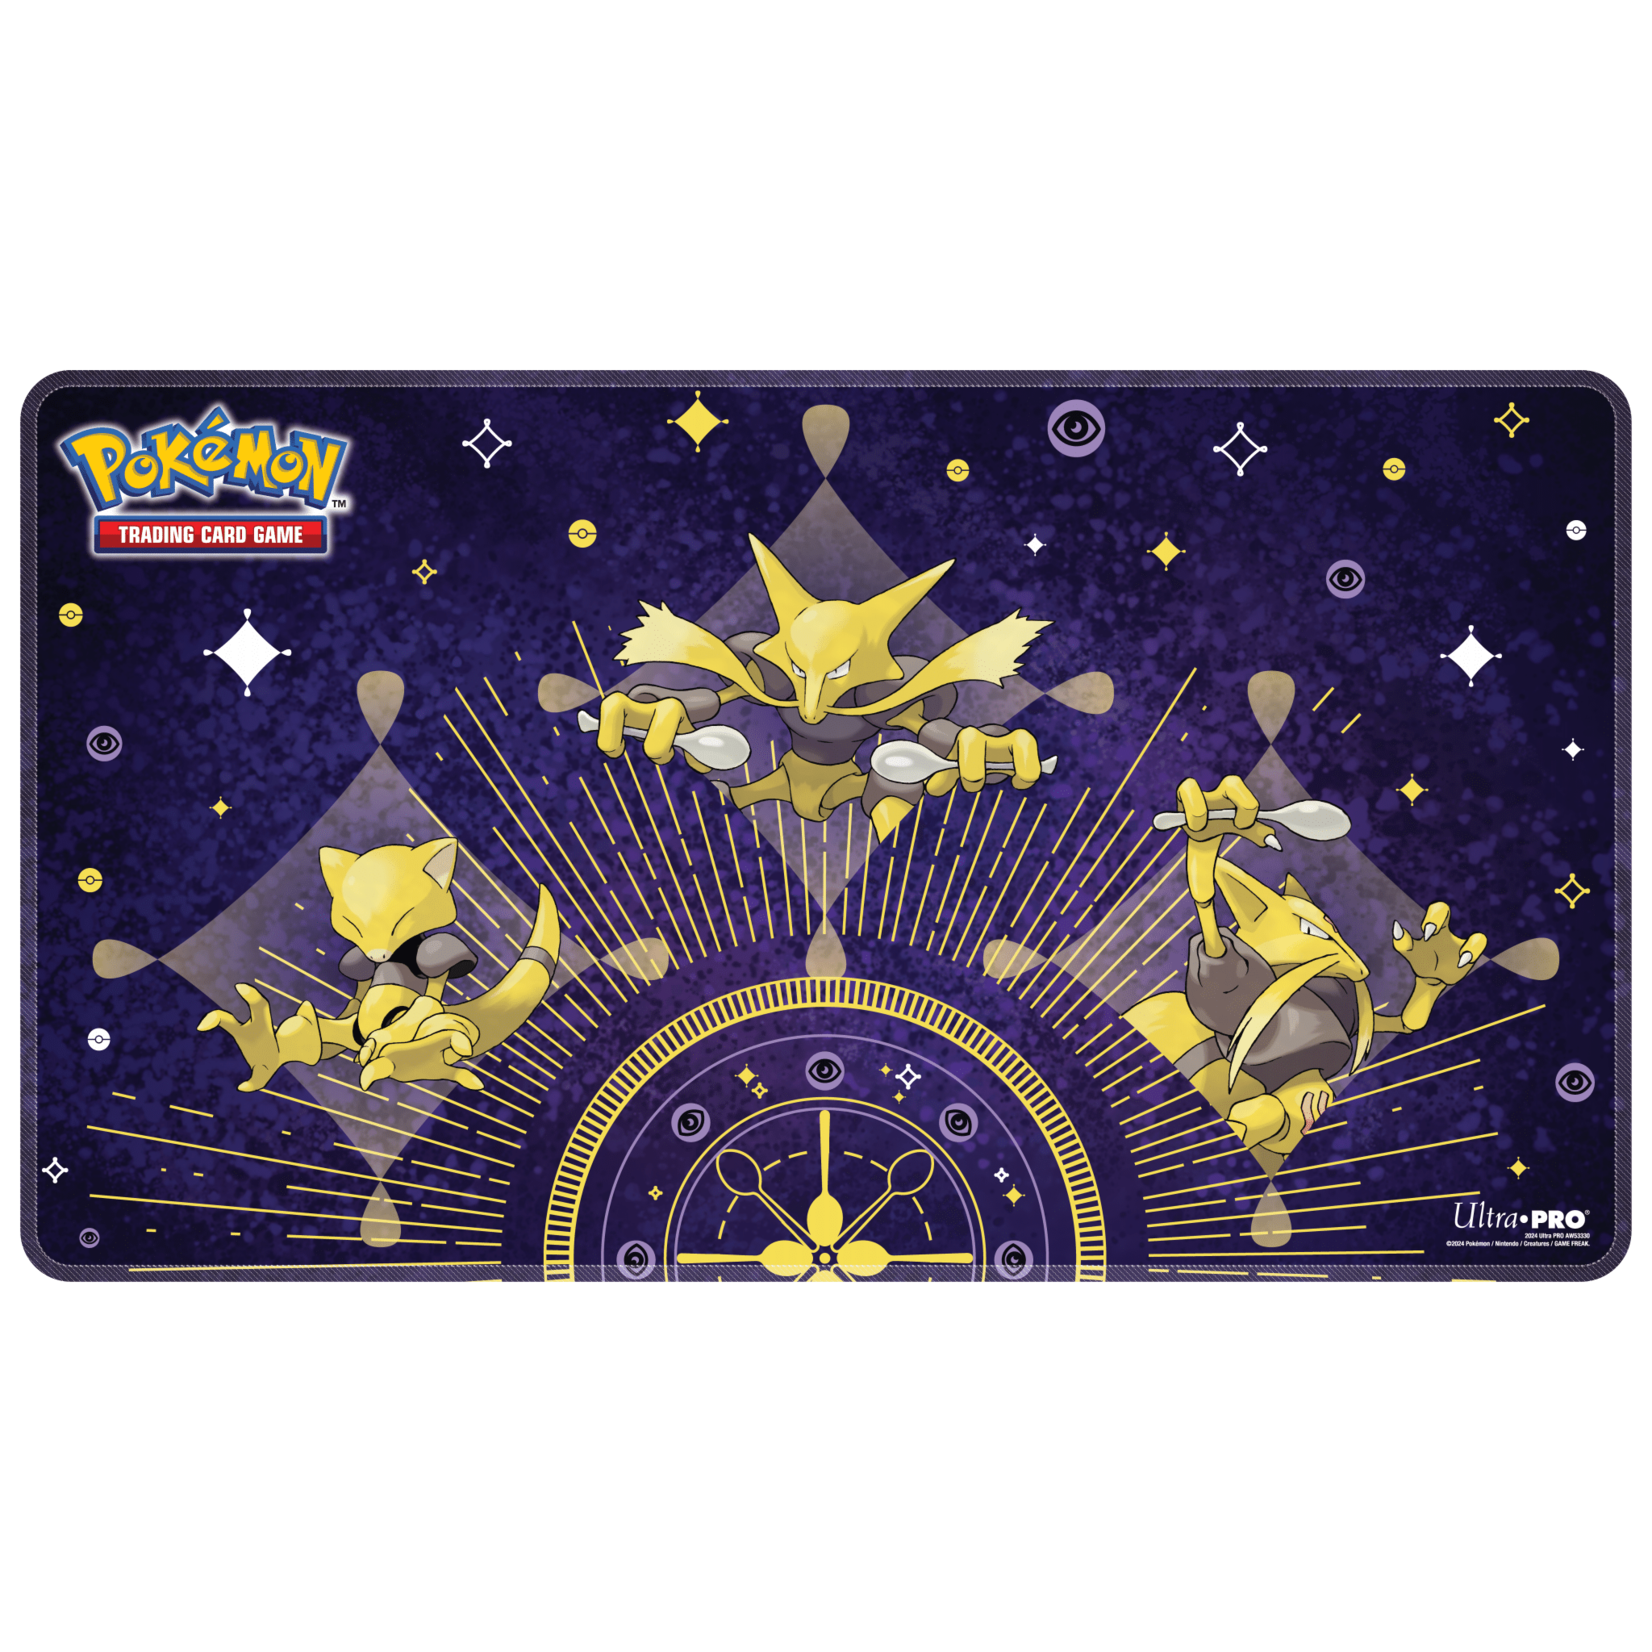 Puzzle Pokemon - neon, 1 500 pieces